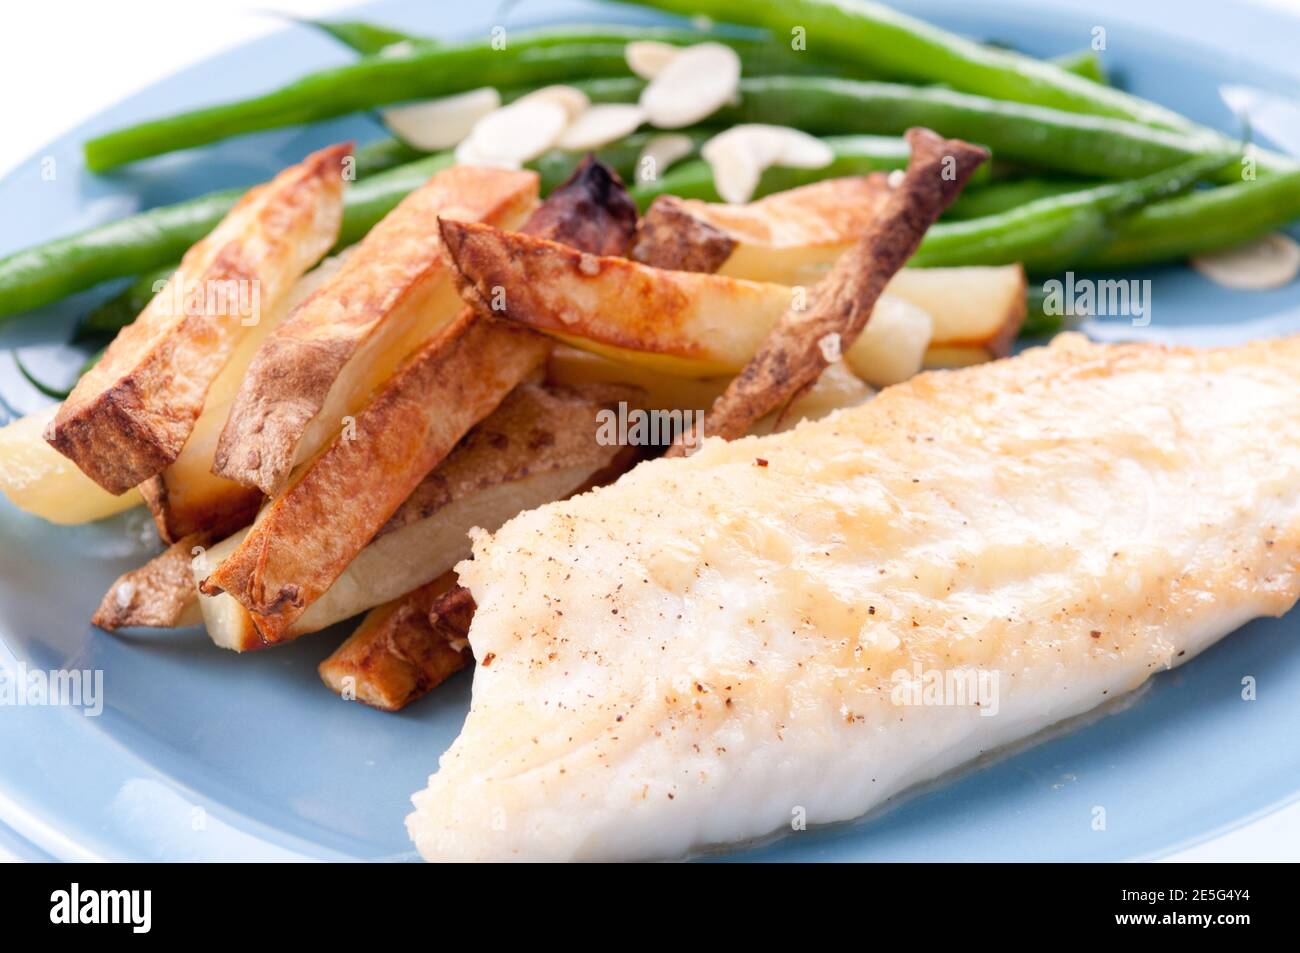 filet de poisson tilapia riche en protéines avec légumes Banque D'Images